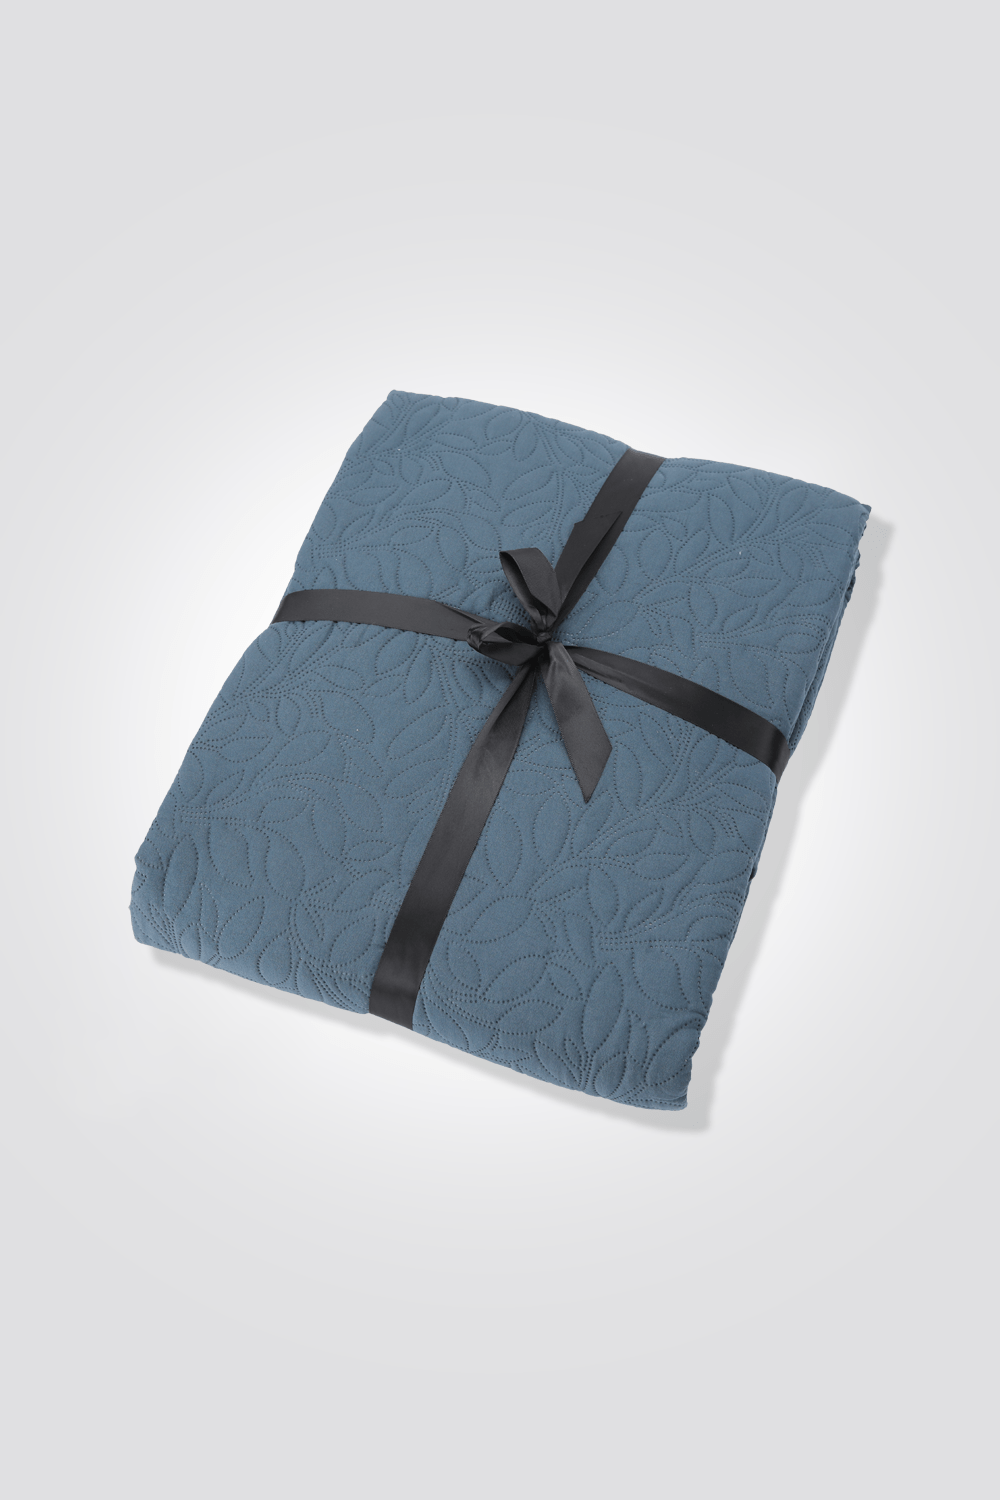 כיסוי מיטה יחיד 240X170 ס"מ בצבע כחול